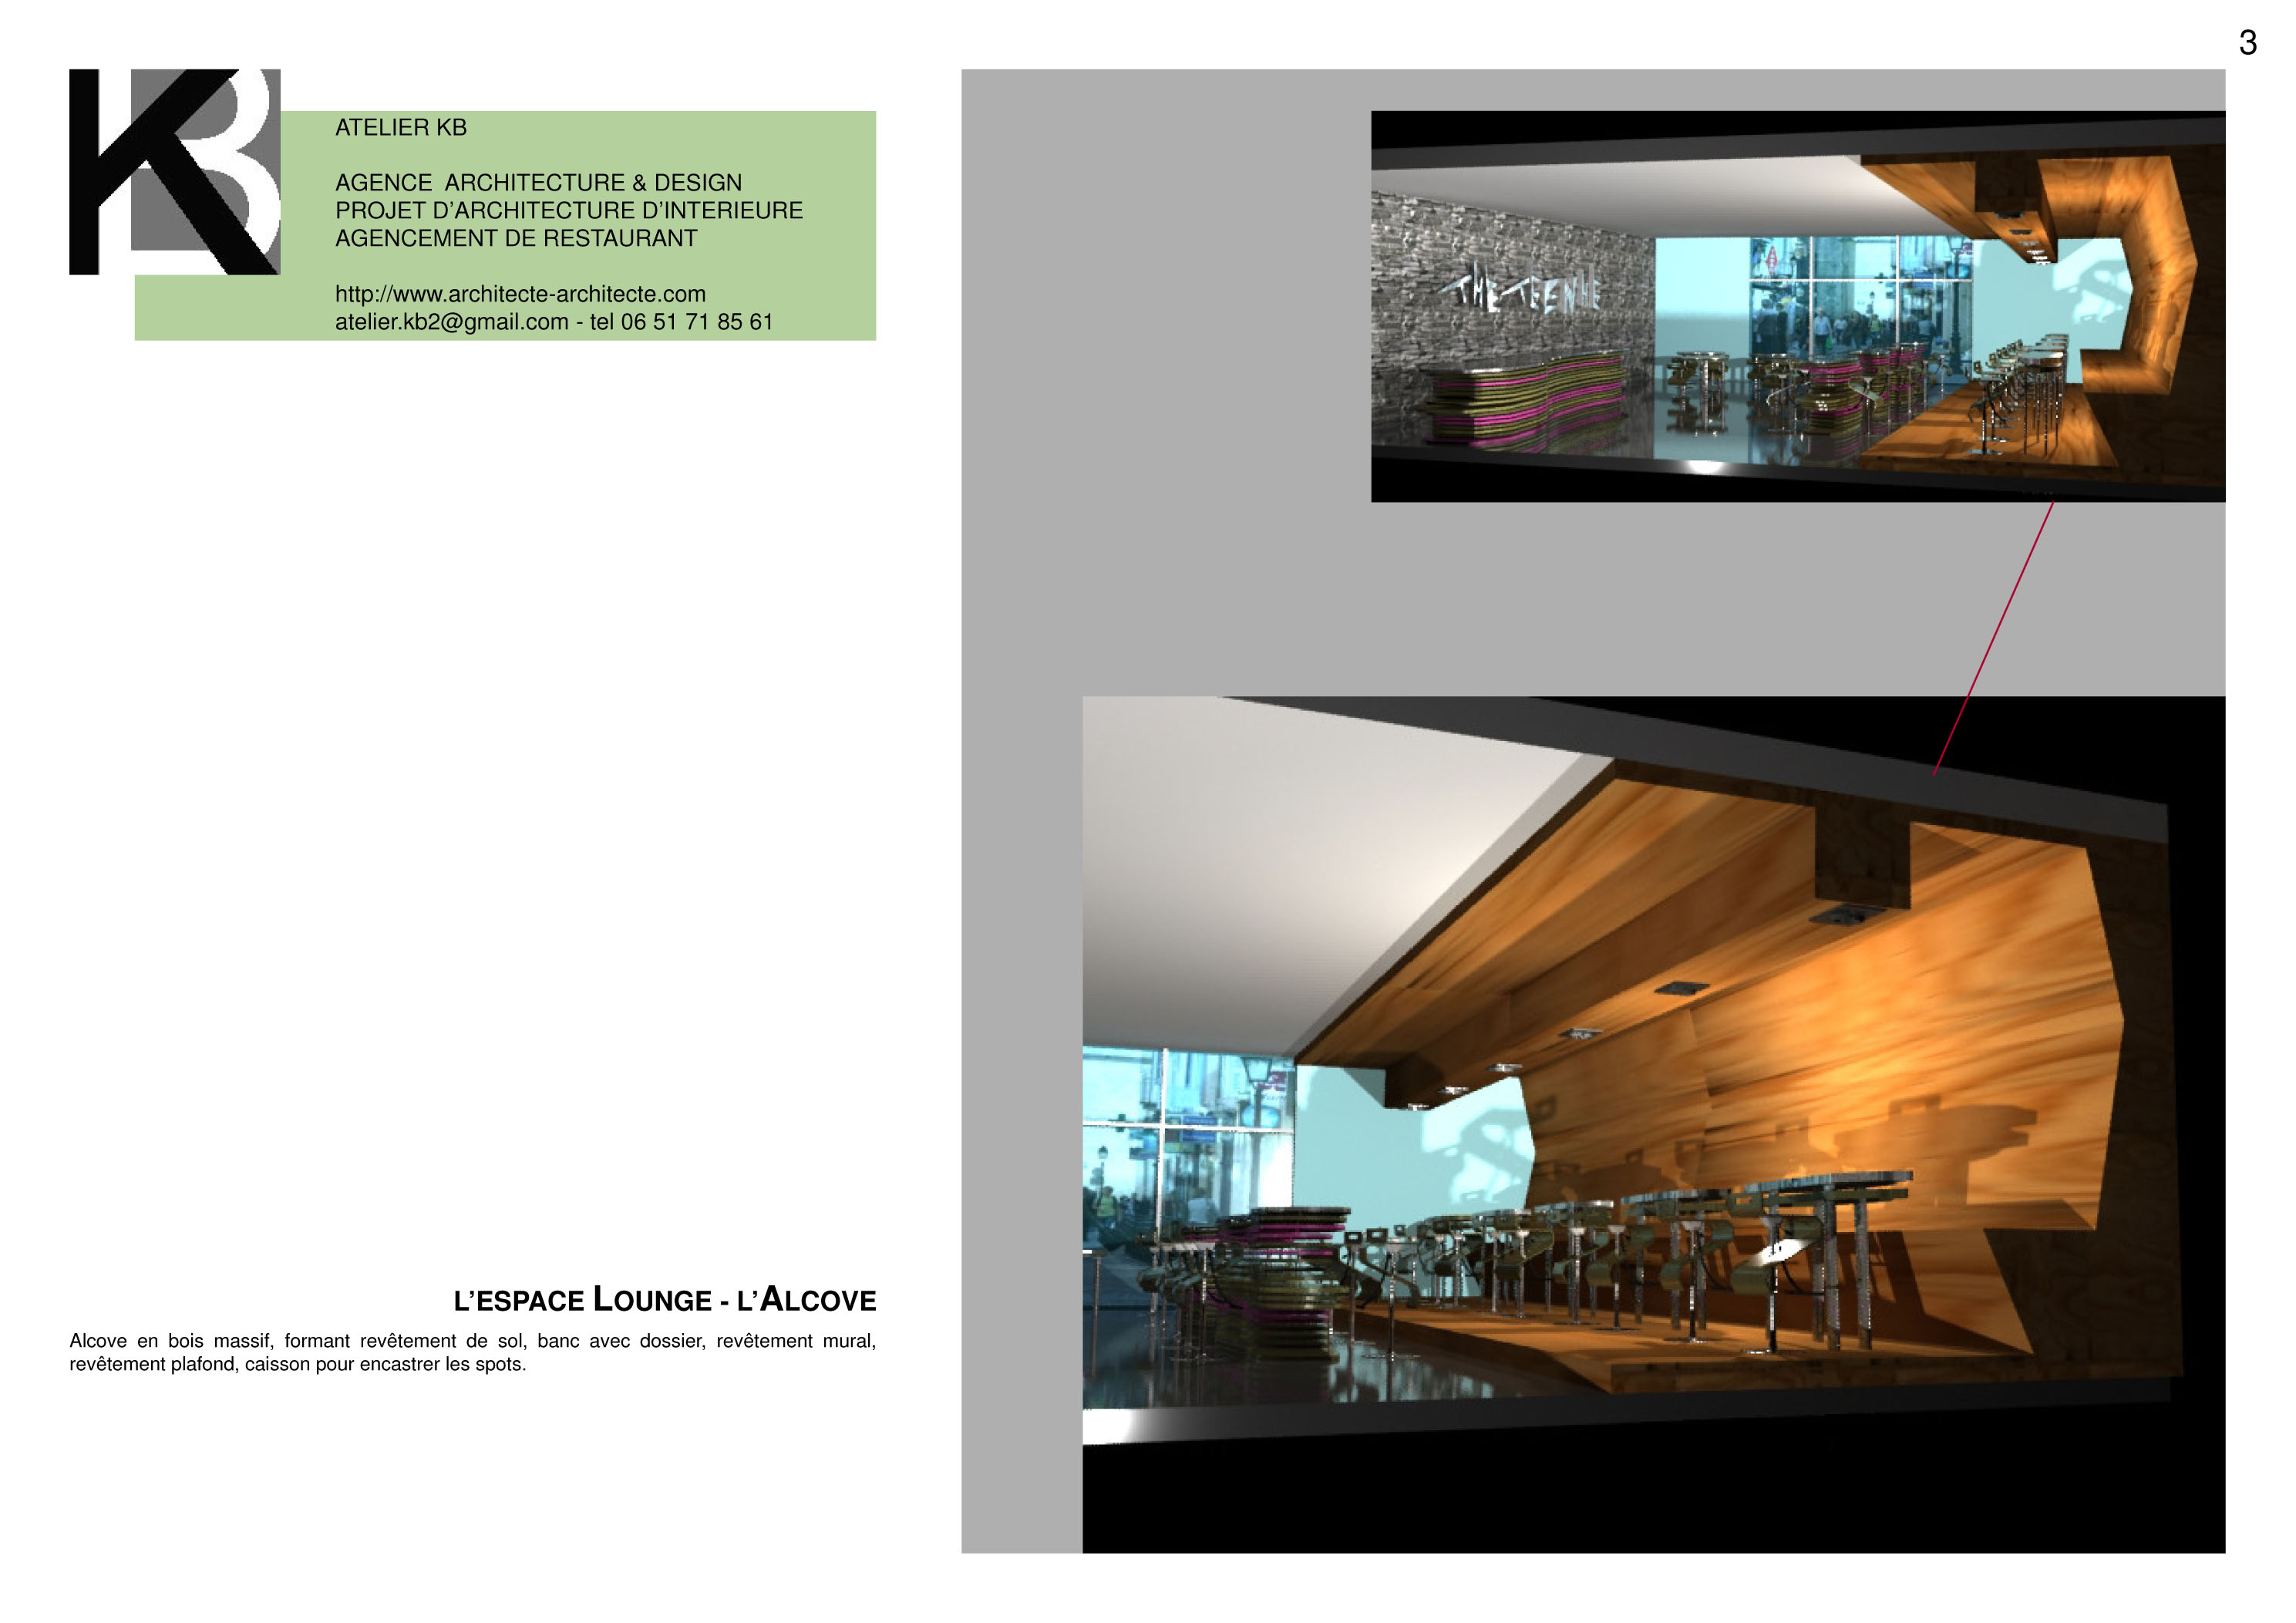 architecte interieur agencement amenagement restaurant meuble